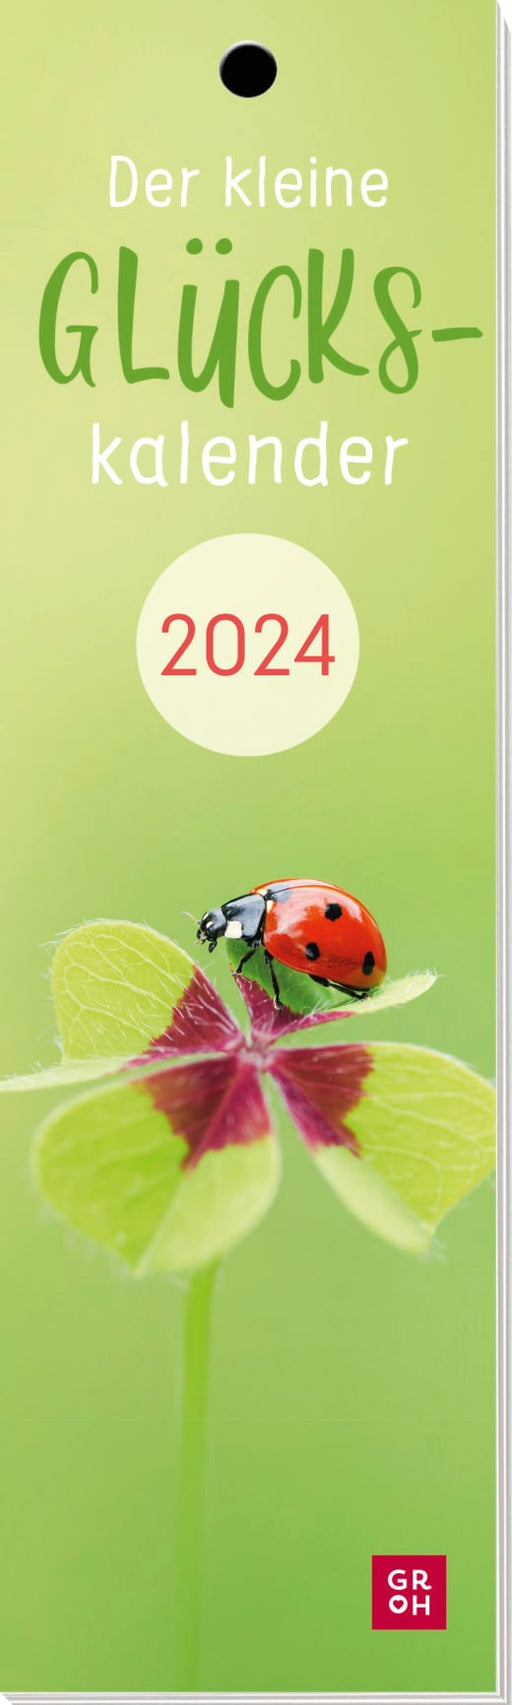 Der kleine Glückskalender 2024 - Lesezeichenkalender - 12 Seiten